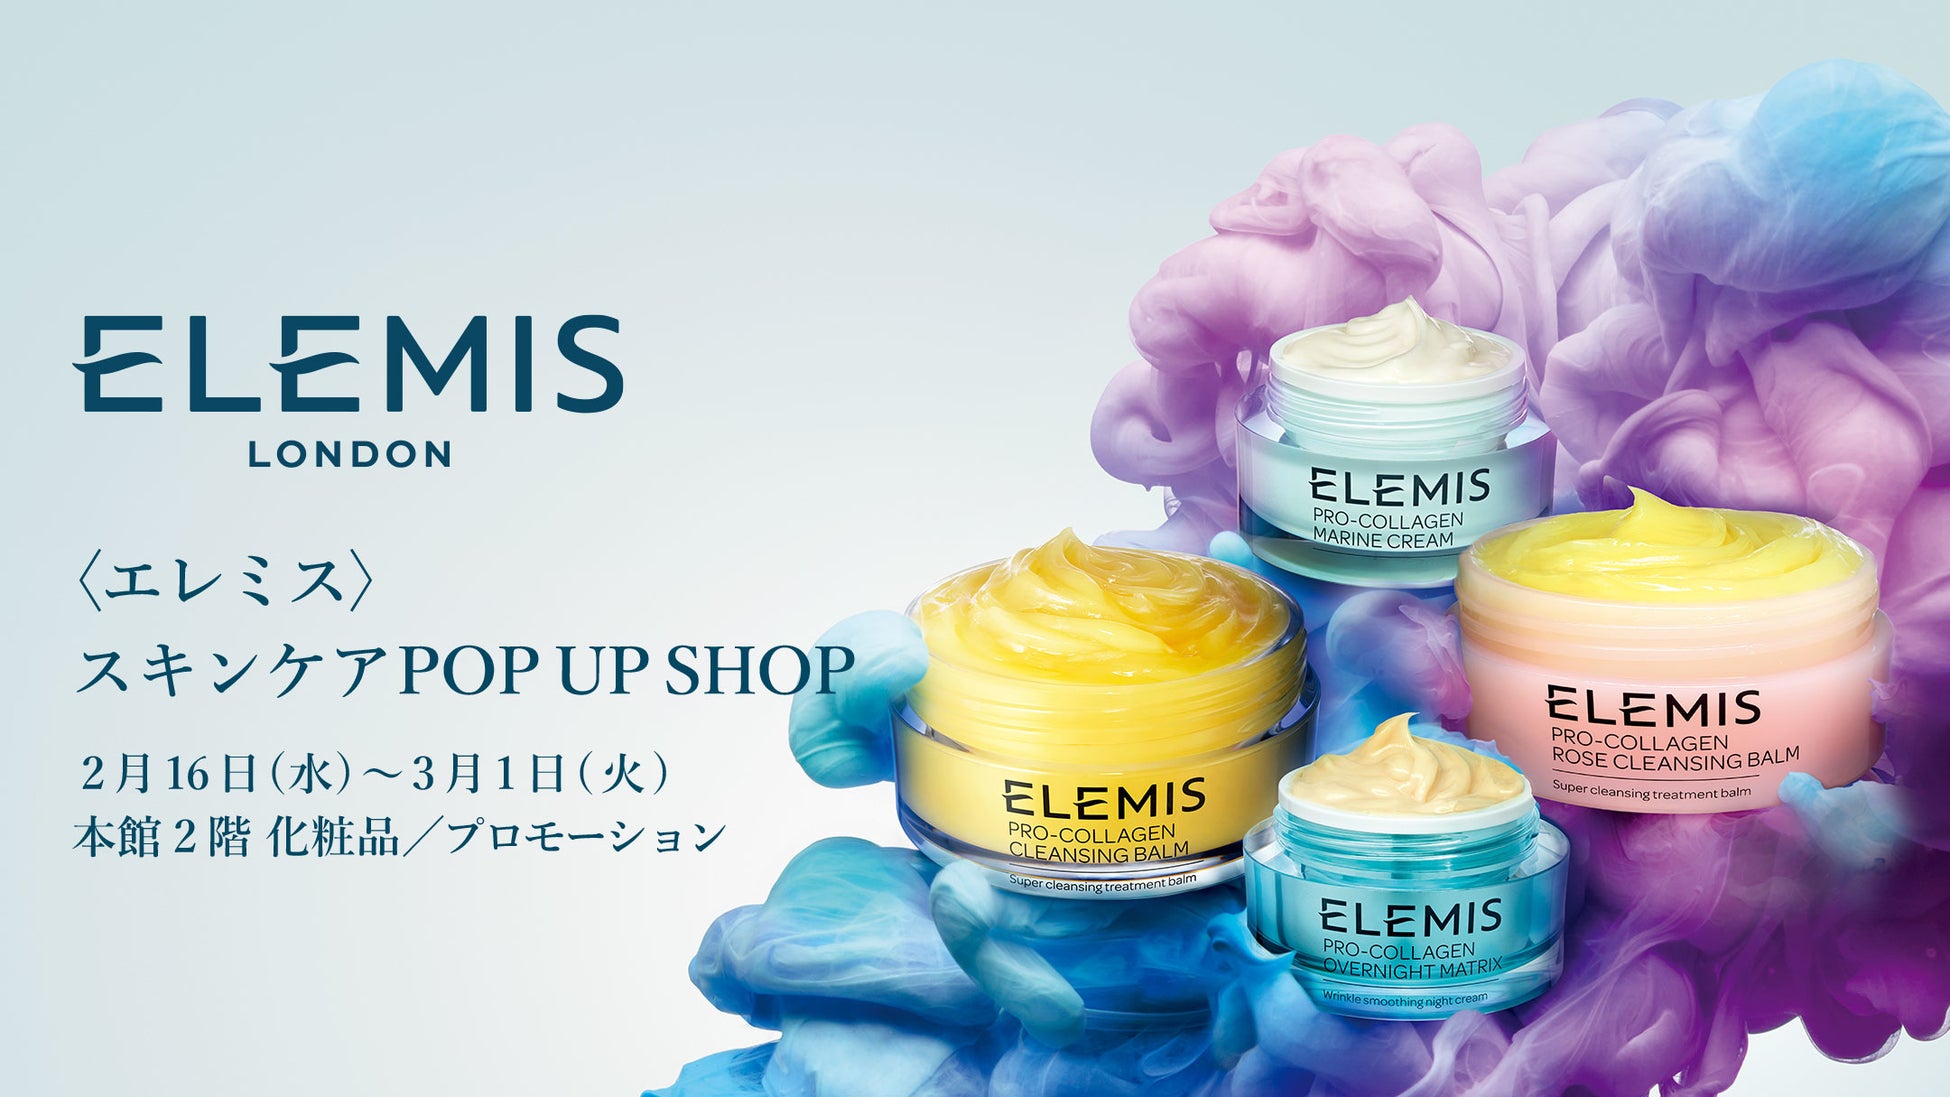 2022年2月16日(水)～3月1日(火) 伊勢丹新宿店本館2階化粧品/プロモーションでスキンウェルネスビューティブランド〈エレミス〉がPOP UP SHOPをオープン。